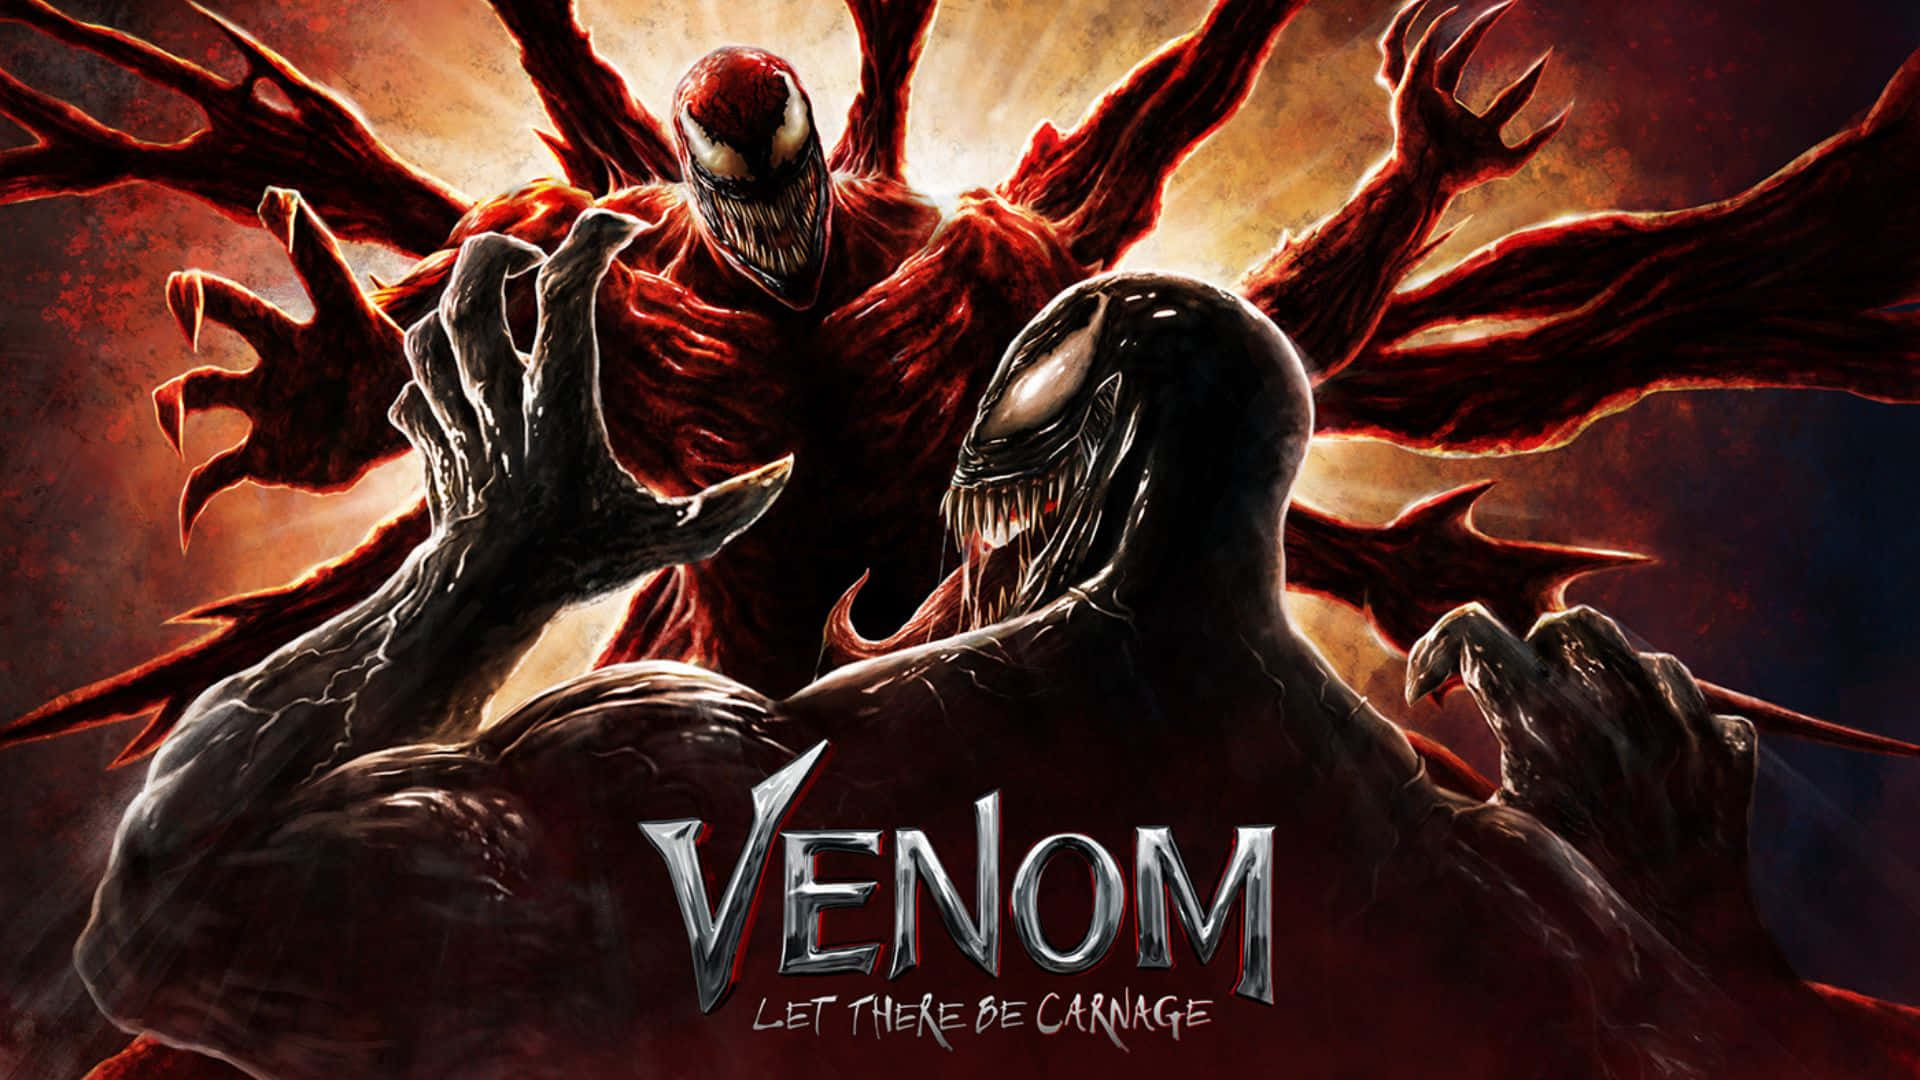 Bildmarvel Comics Superstjärnorna Venom & Carnage Drabbar Samman I Strid. Wallpaper